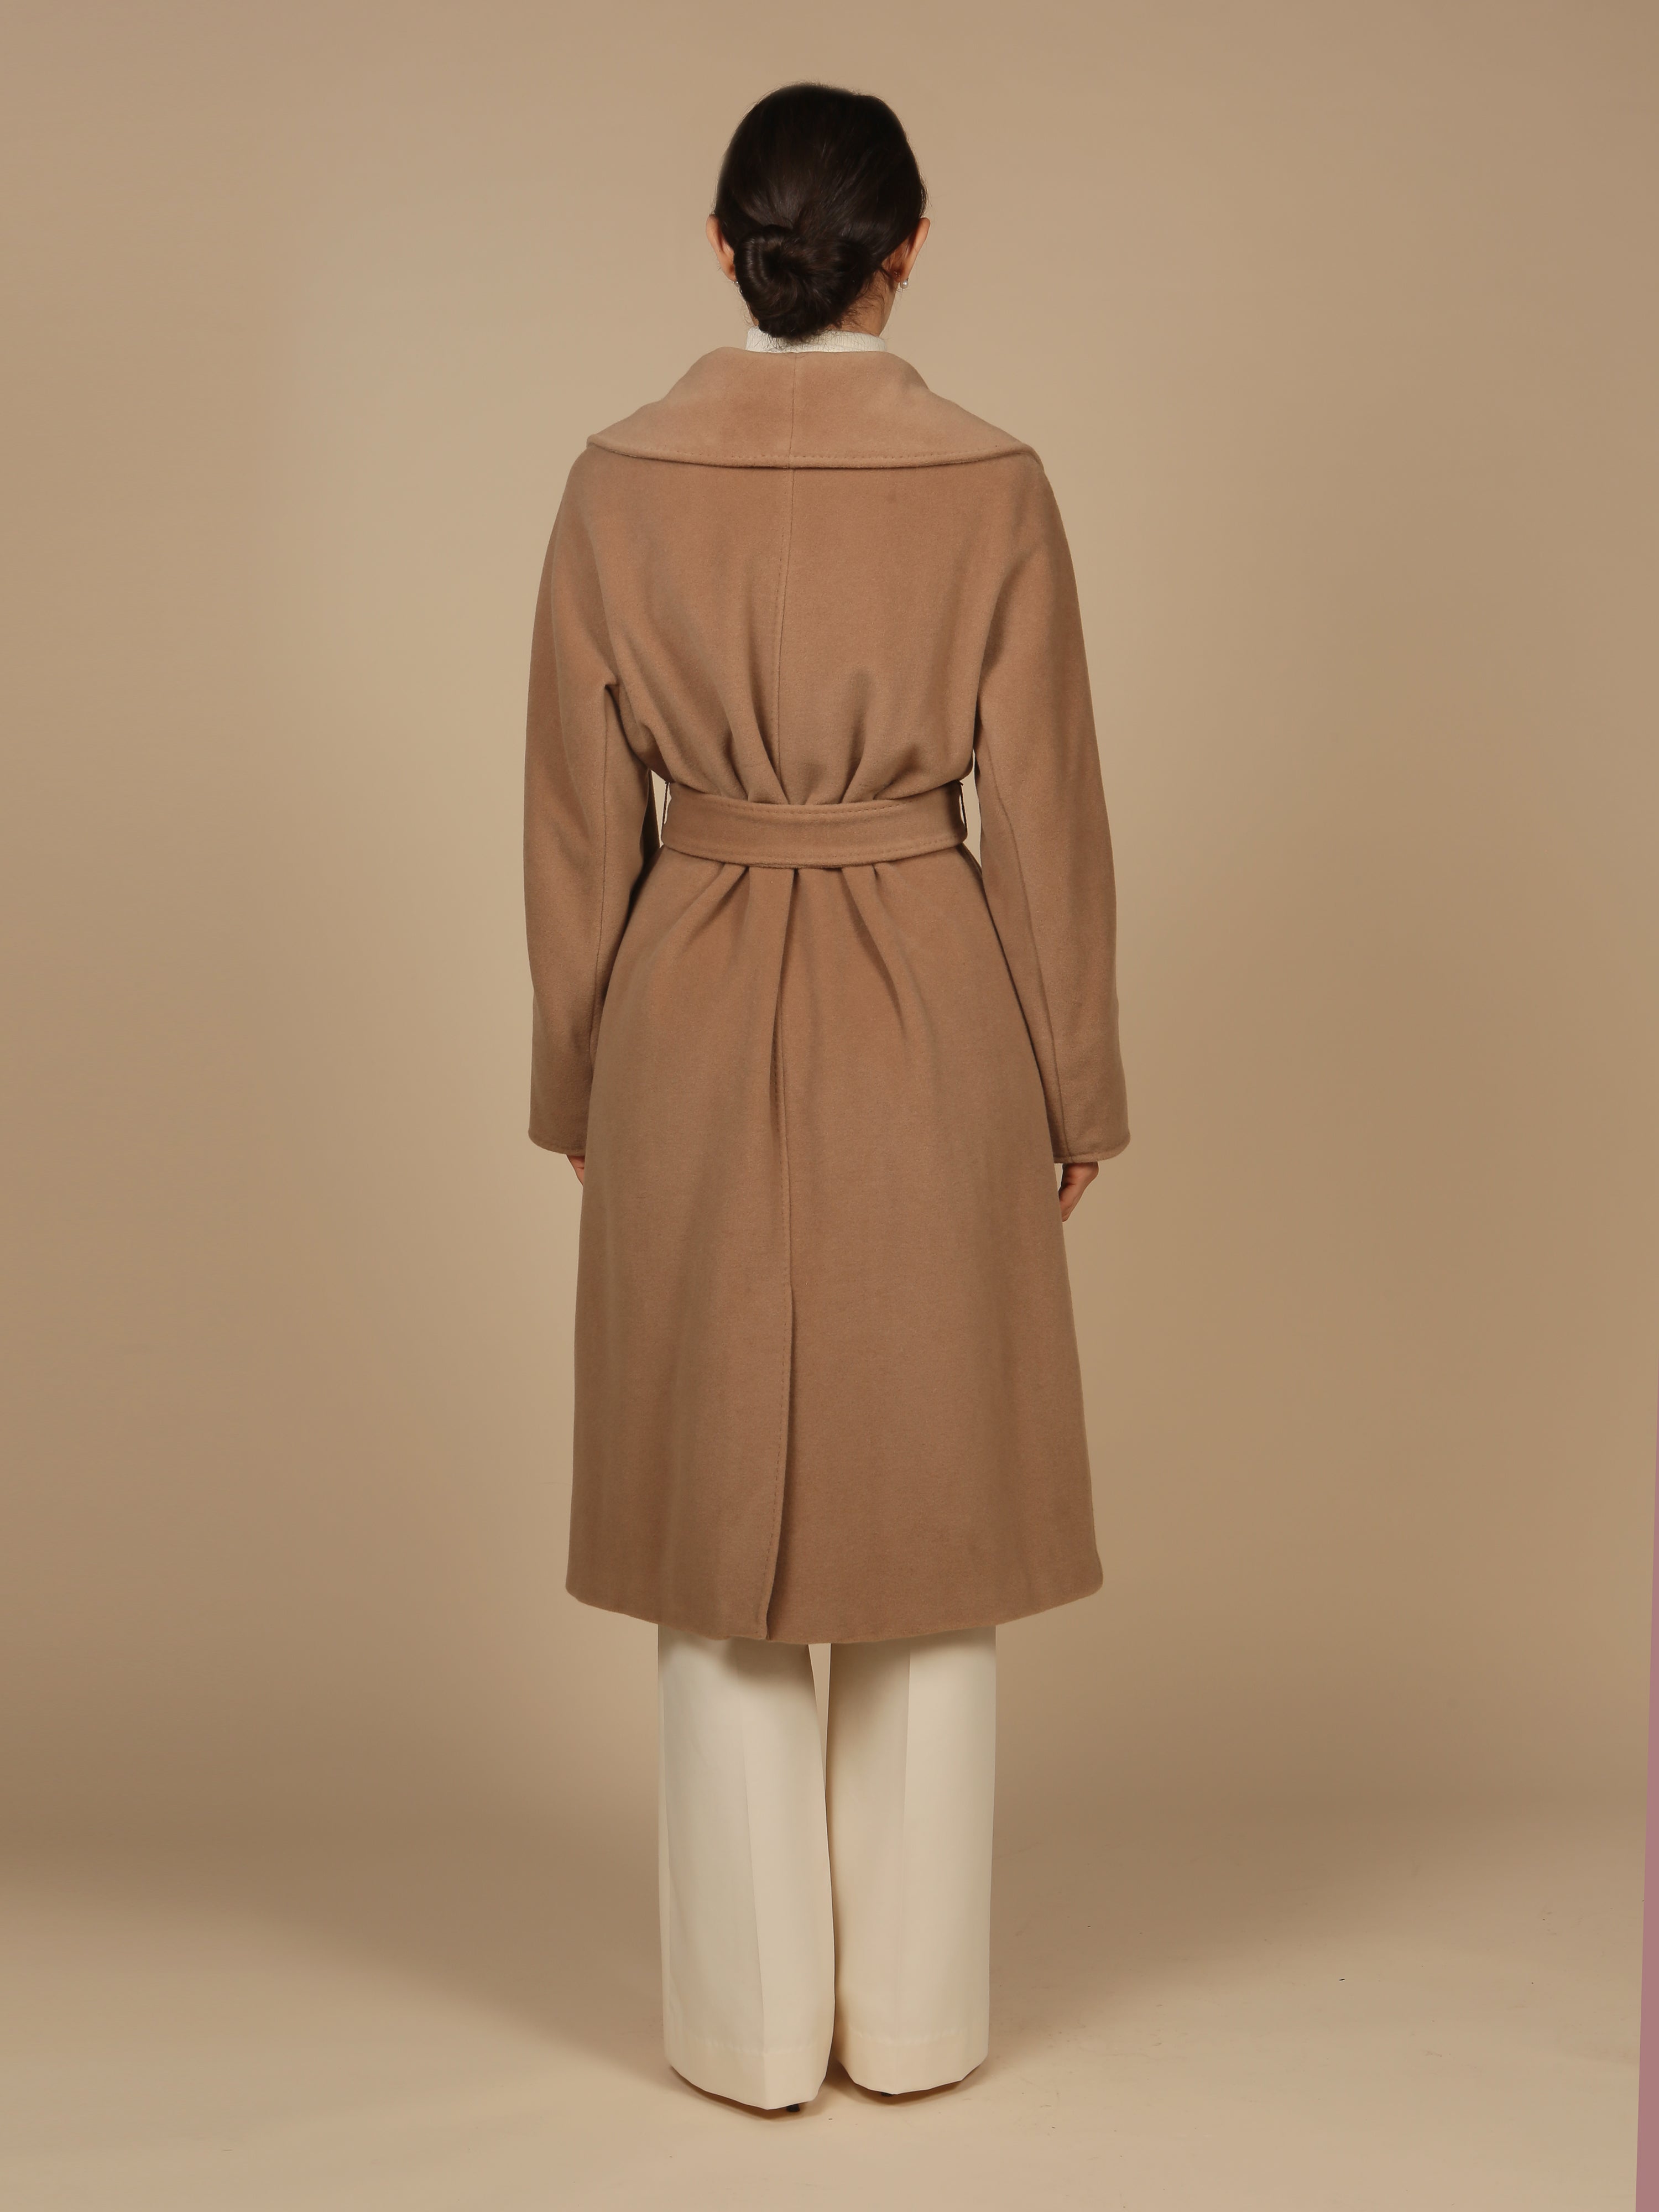 'Hepburn' Italian Virgin Wool and Cashmere Coat  in Marrone